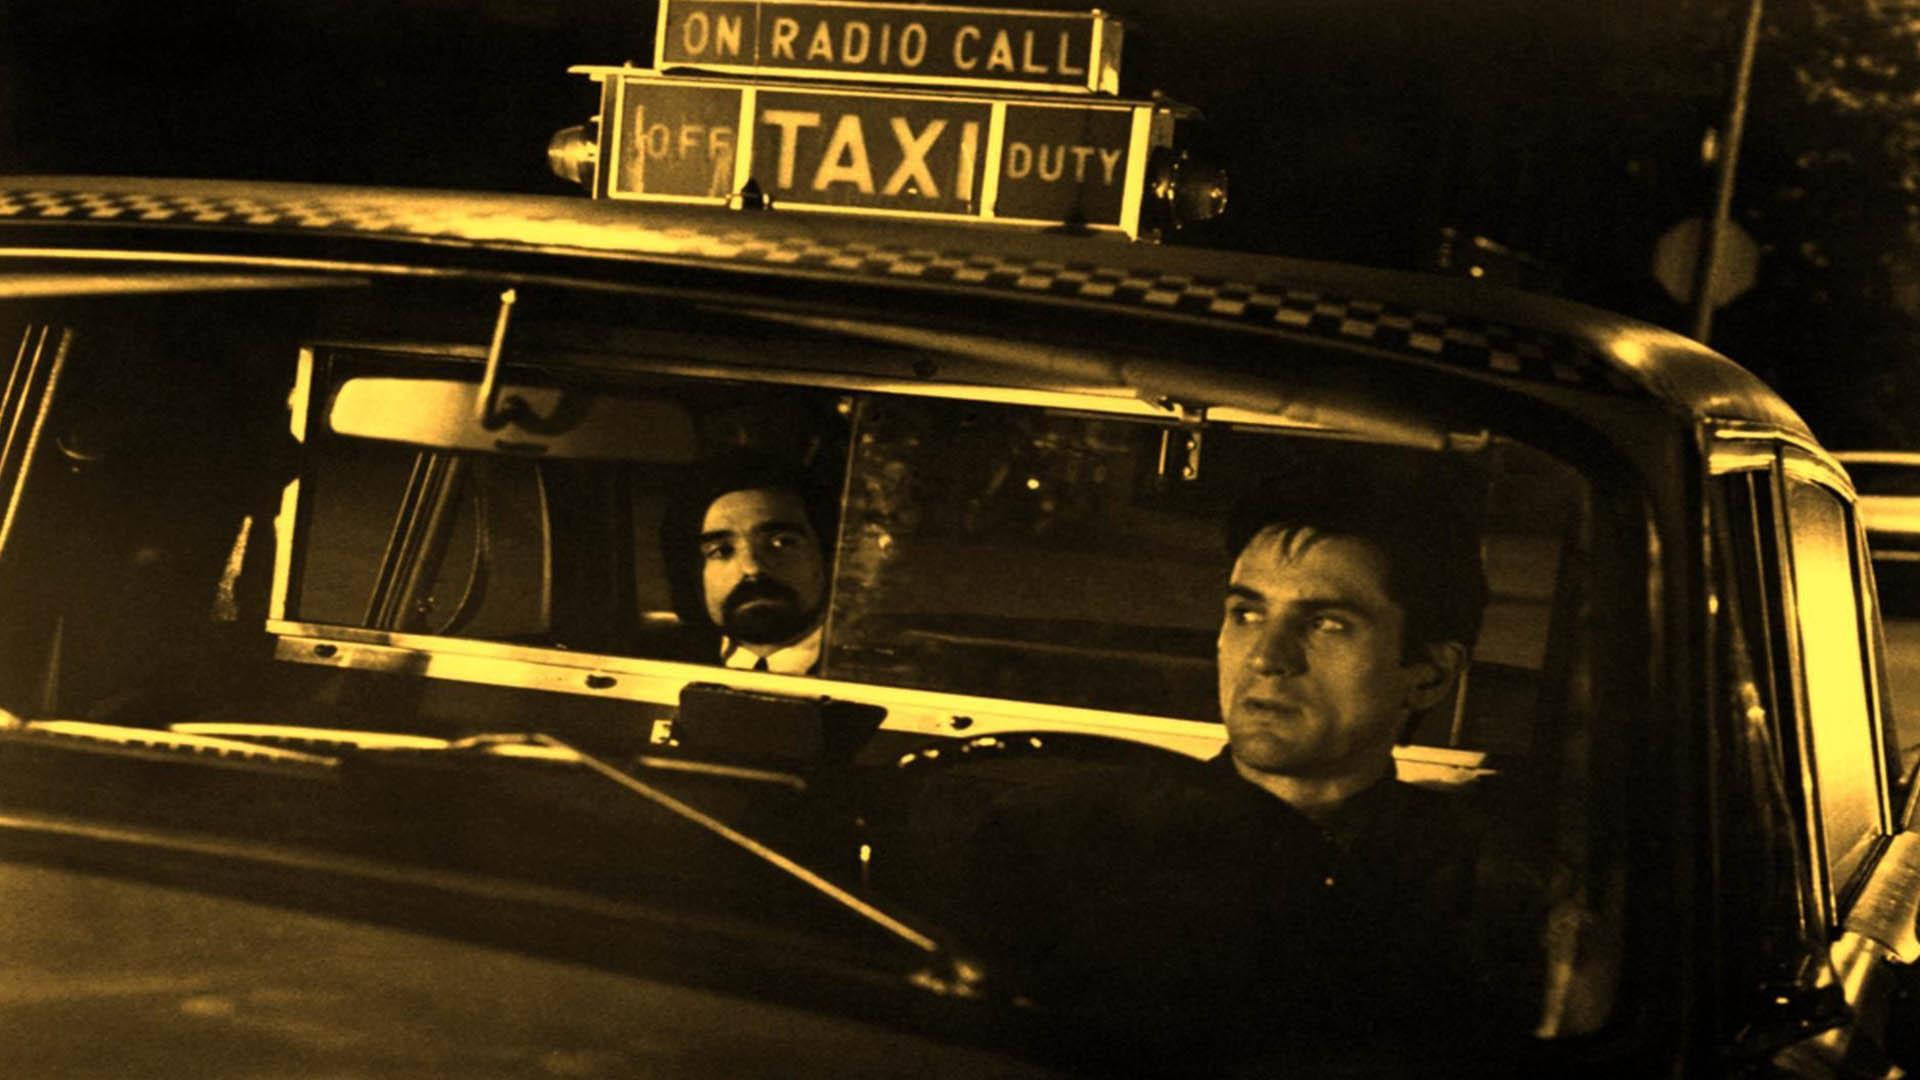 ایفای نقش مارتین اسکورسیزی در فیلم taxi driver به همراه رابرت دنیرو